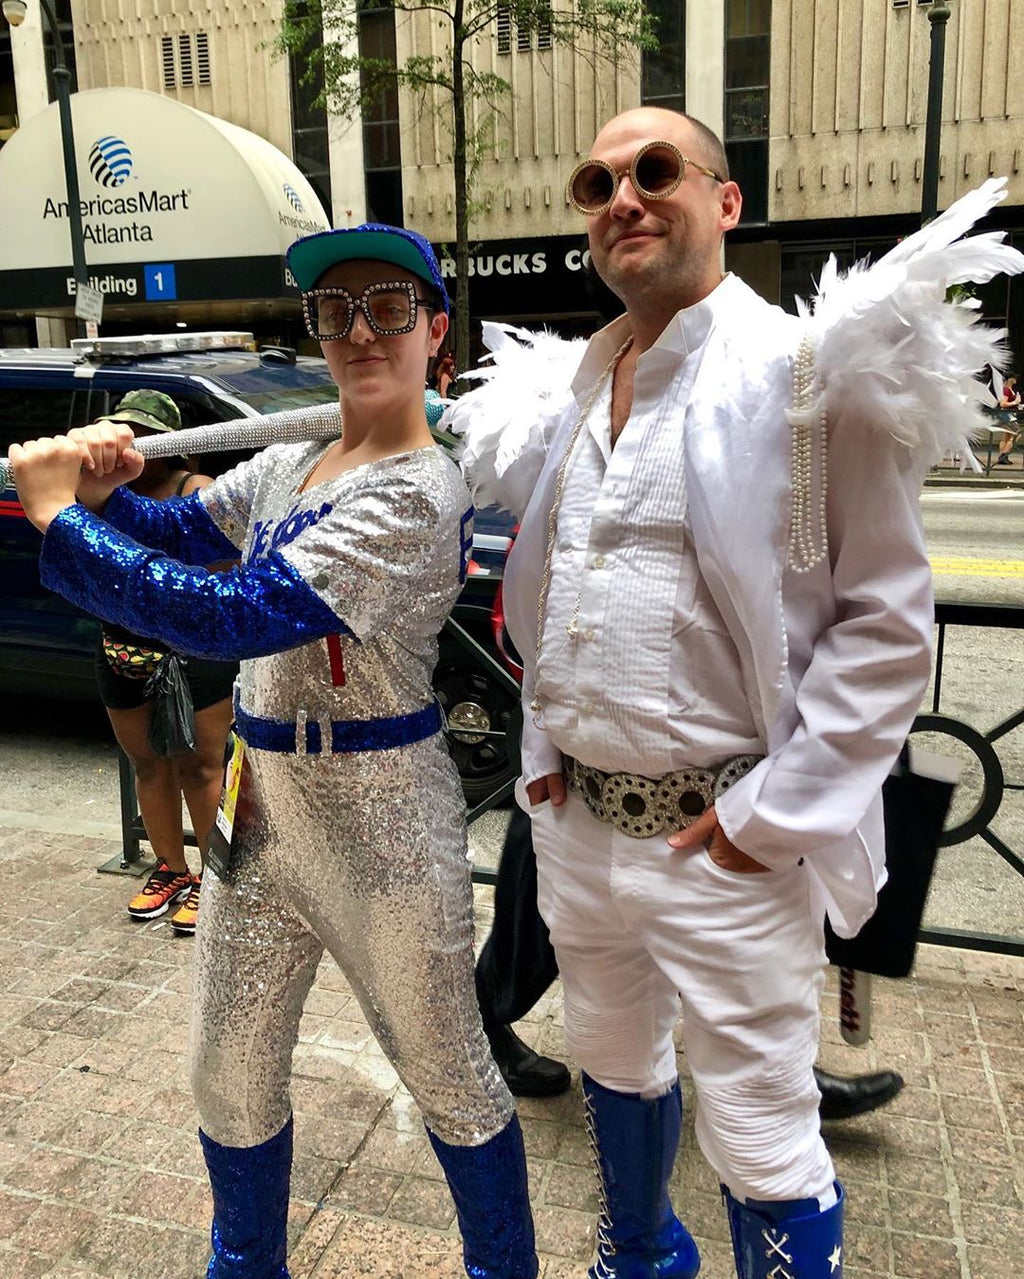 Elton john, Elton john costume, Baseball outfit